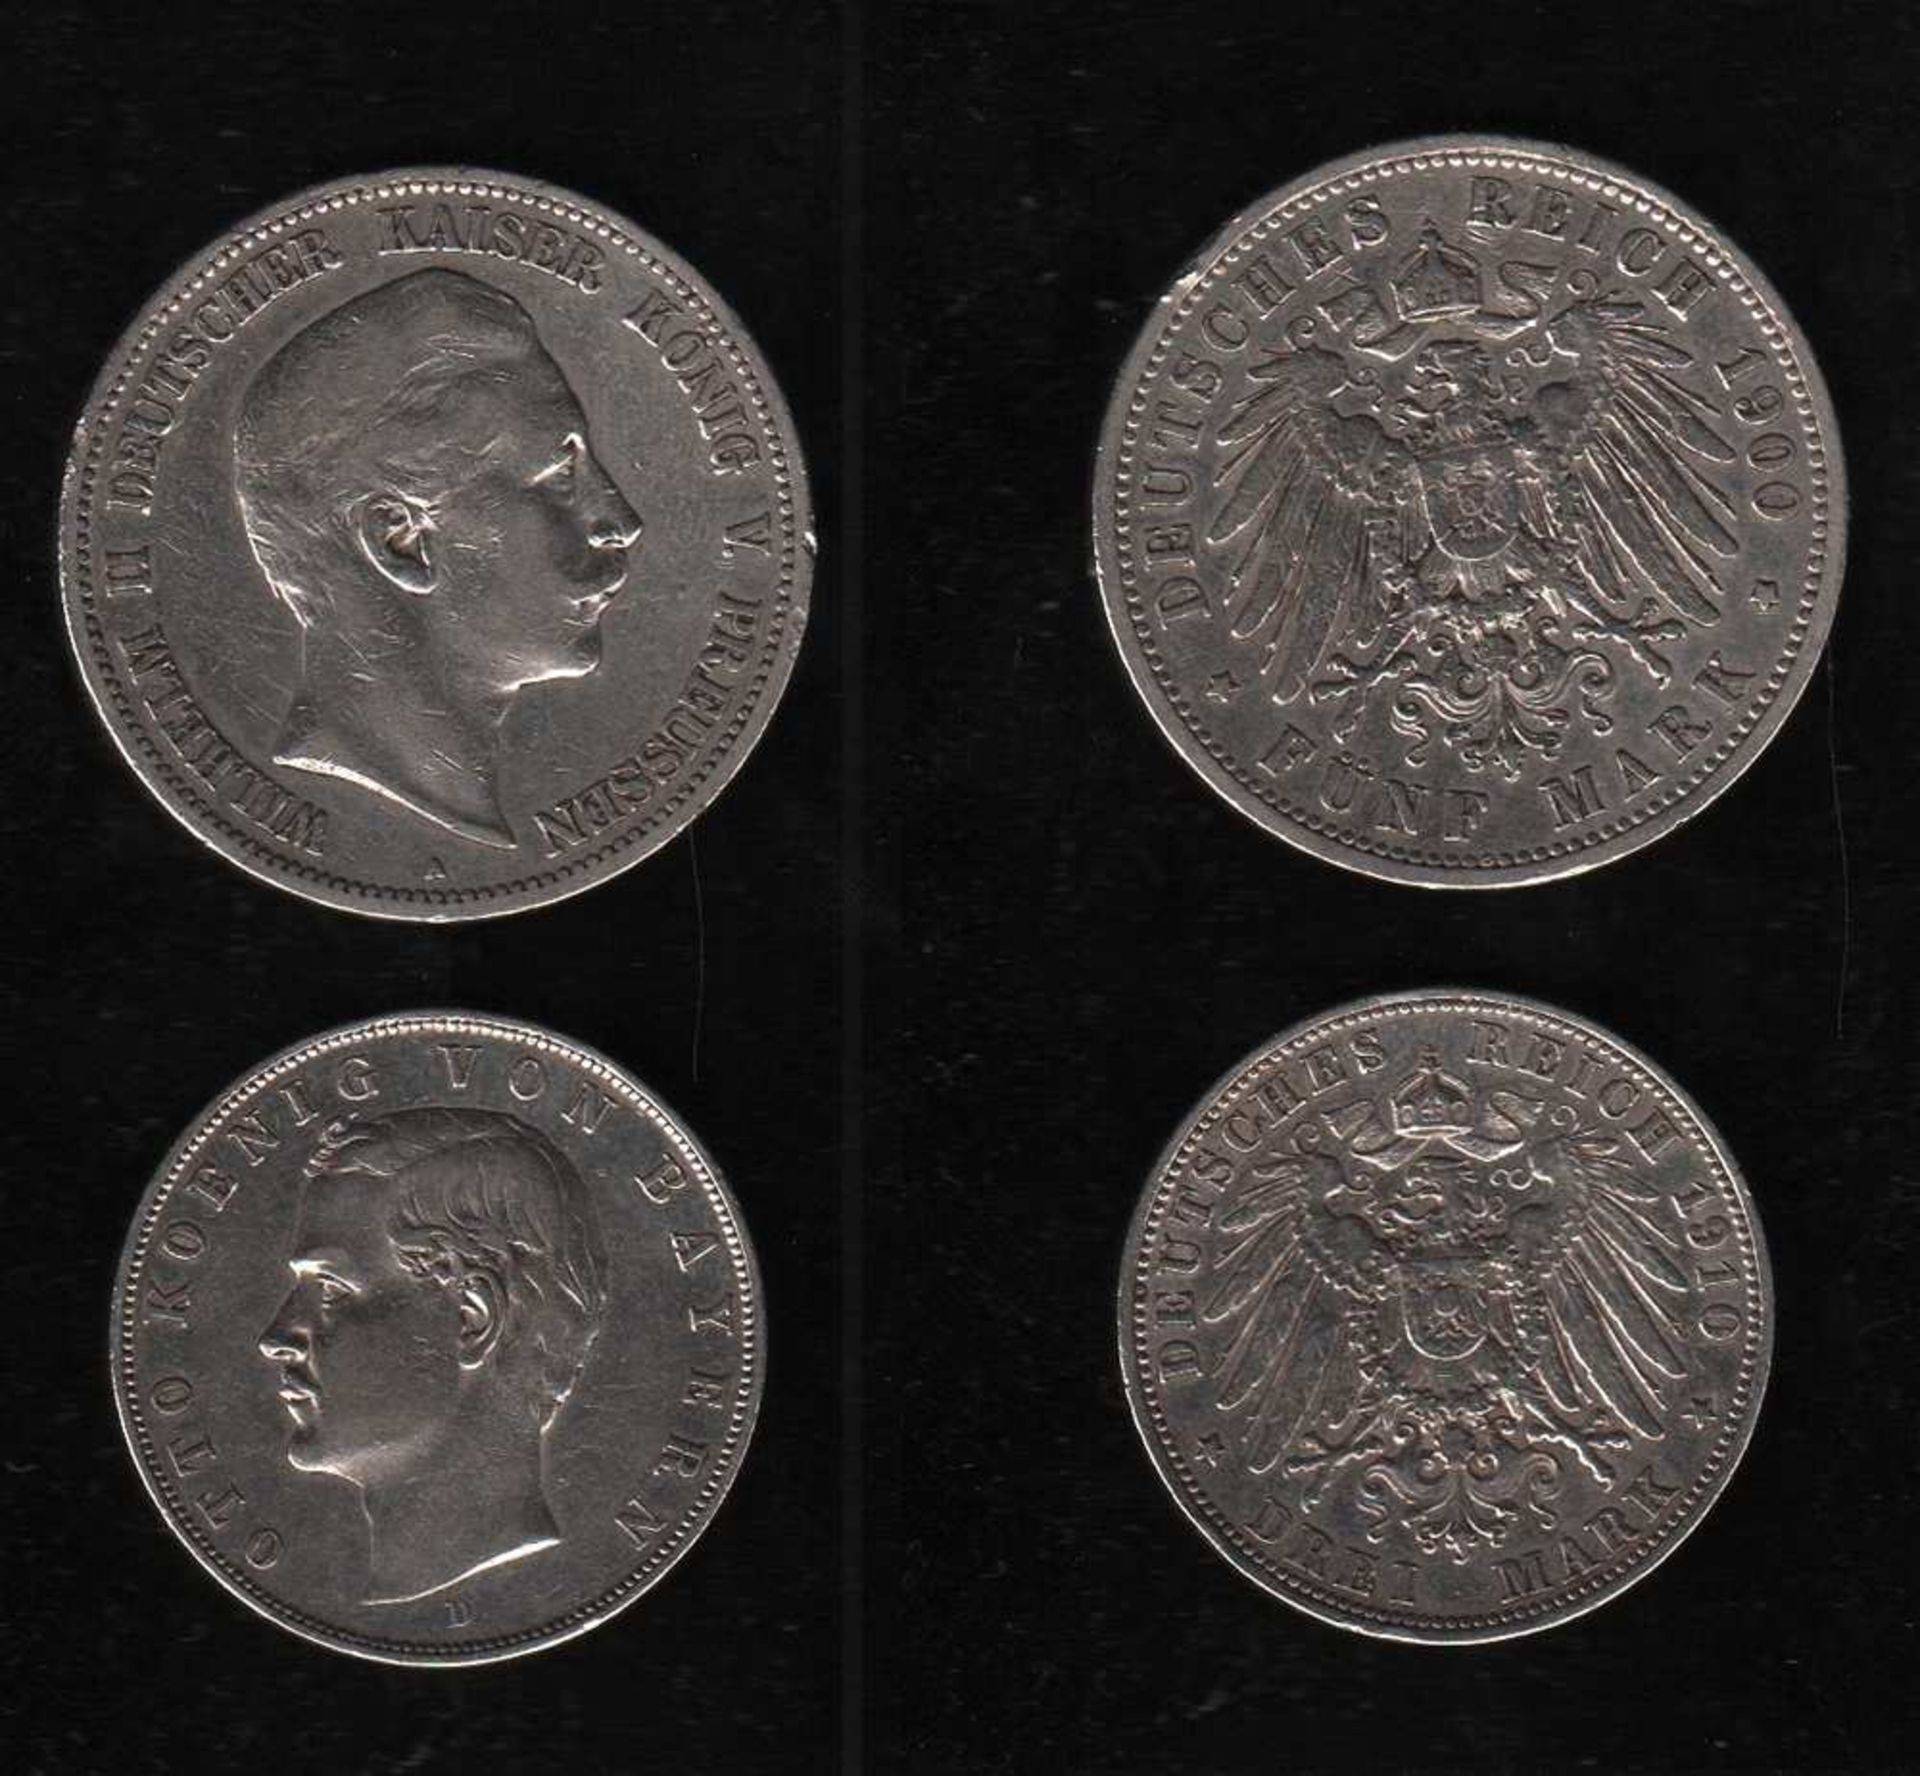 # Deutsches Reich. Silbermünze. 5 Mark. Wilhelm II., Deutscher Kaiser. A 1900. Vorderseite: